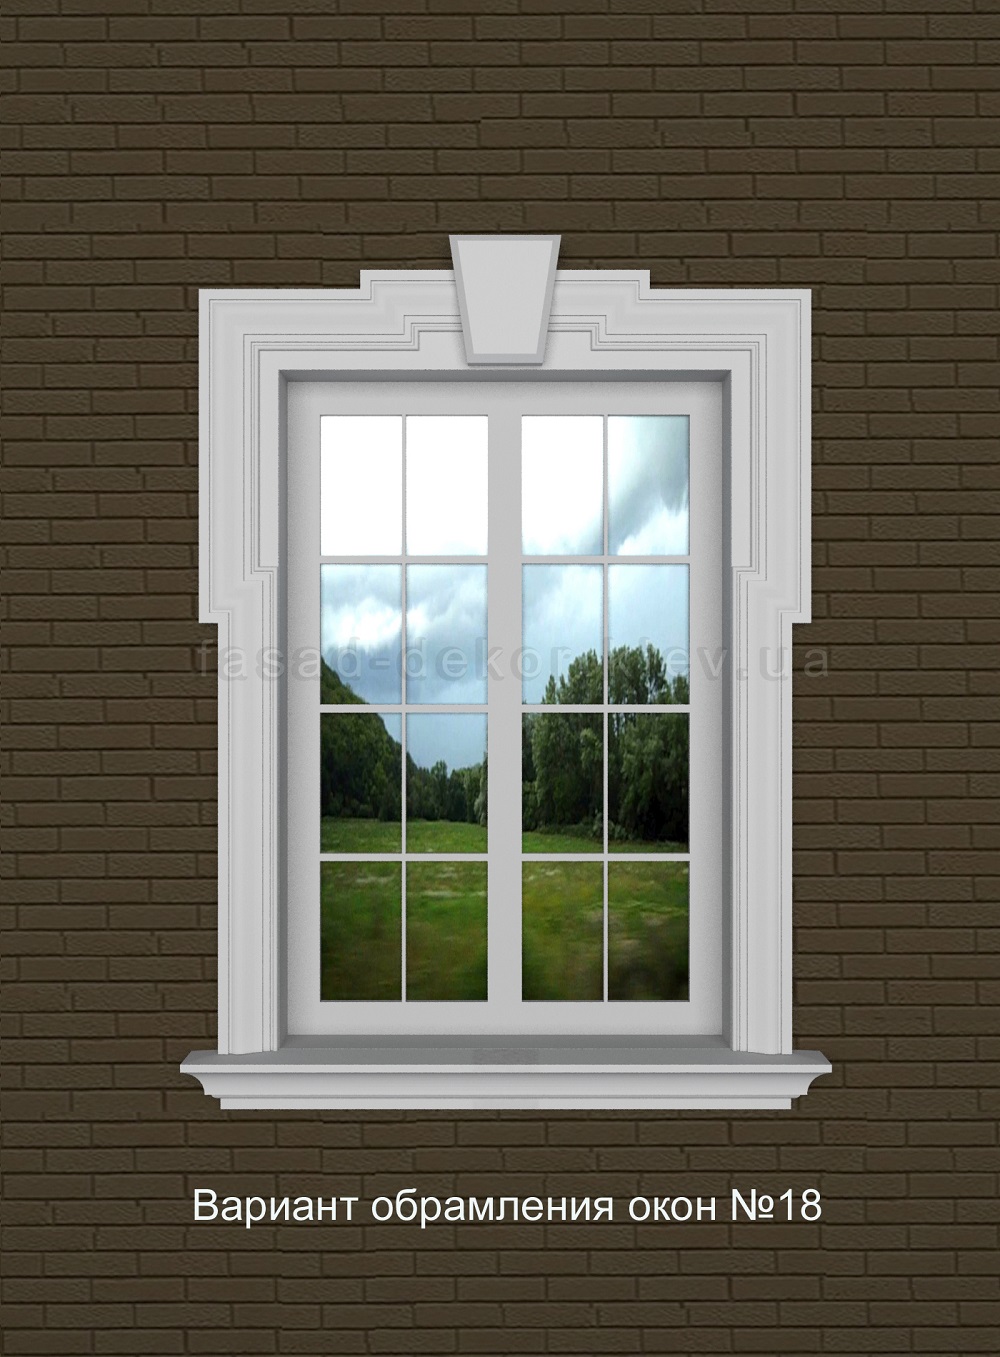 Обрамление окна из пенопласта М-1 обладает следующими характеристиками: